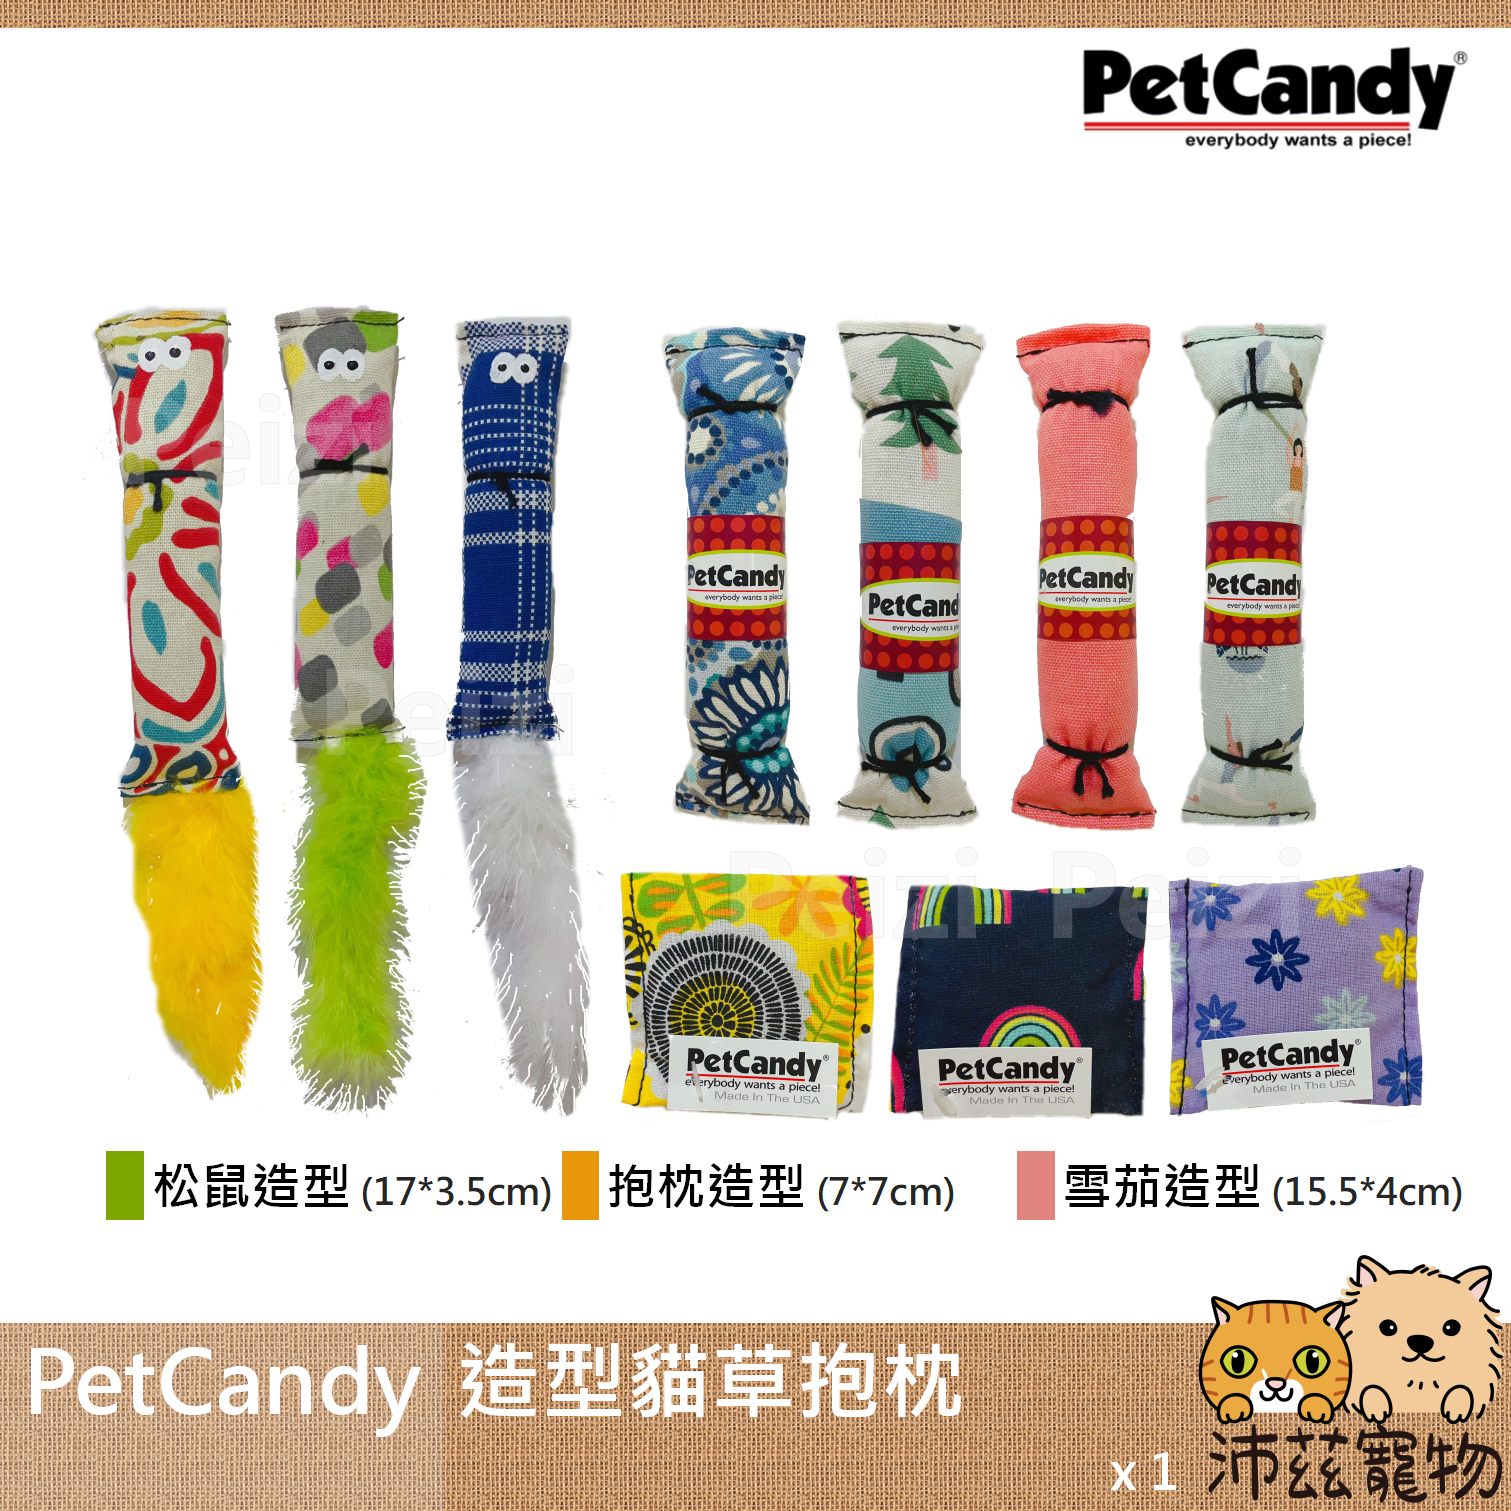 【PetCandy 貓草抱枕】松鼠 雪茄 方形 造型 Candy 貓薄荷 抱枕 貓草 美國 貓玩具 貓 玩具